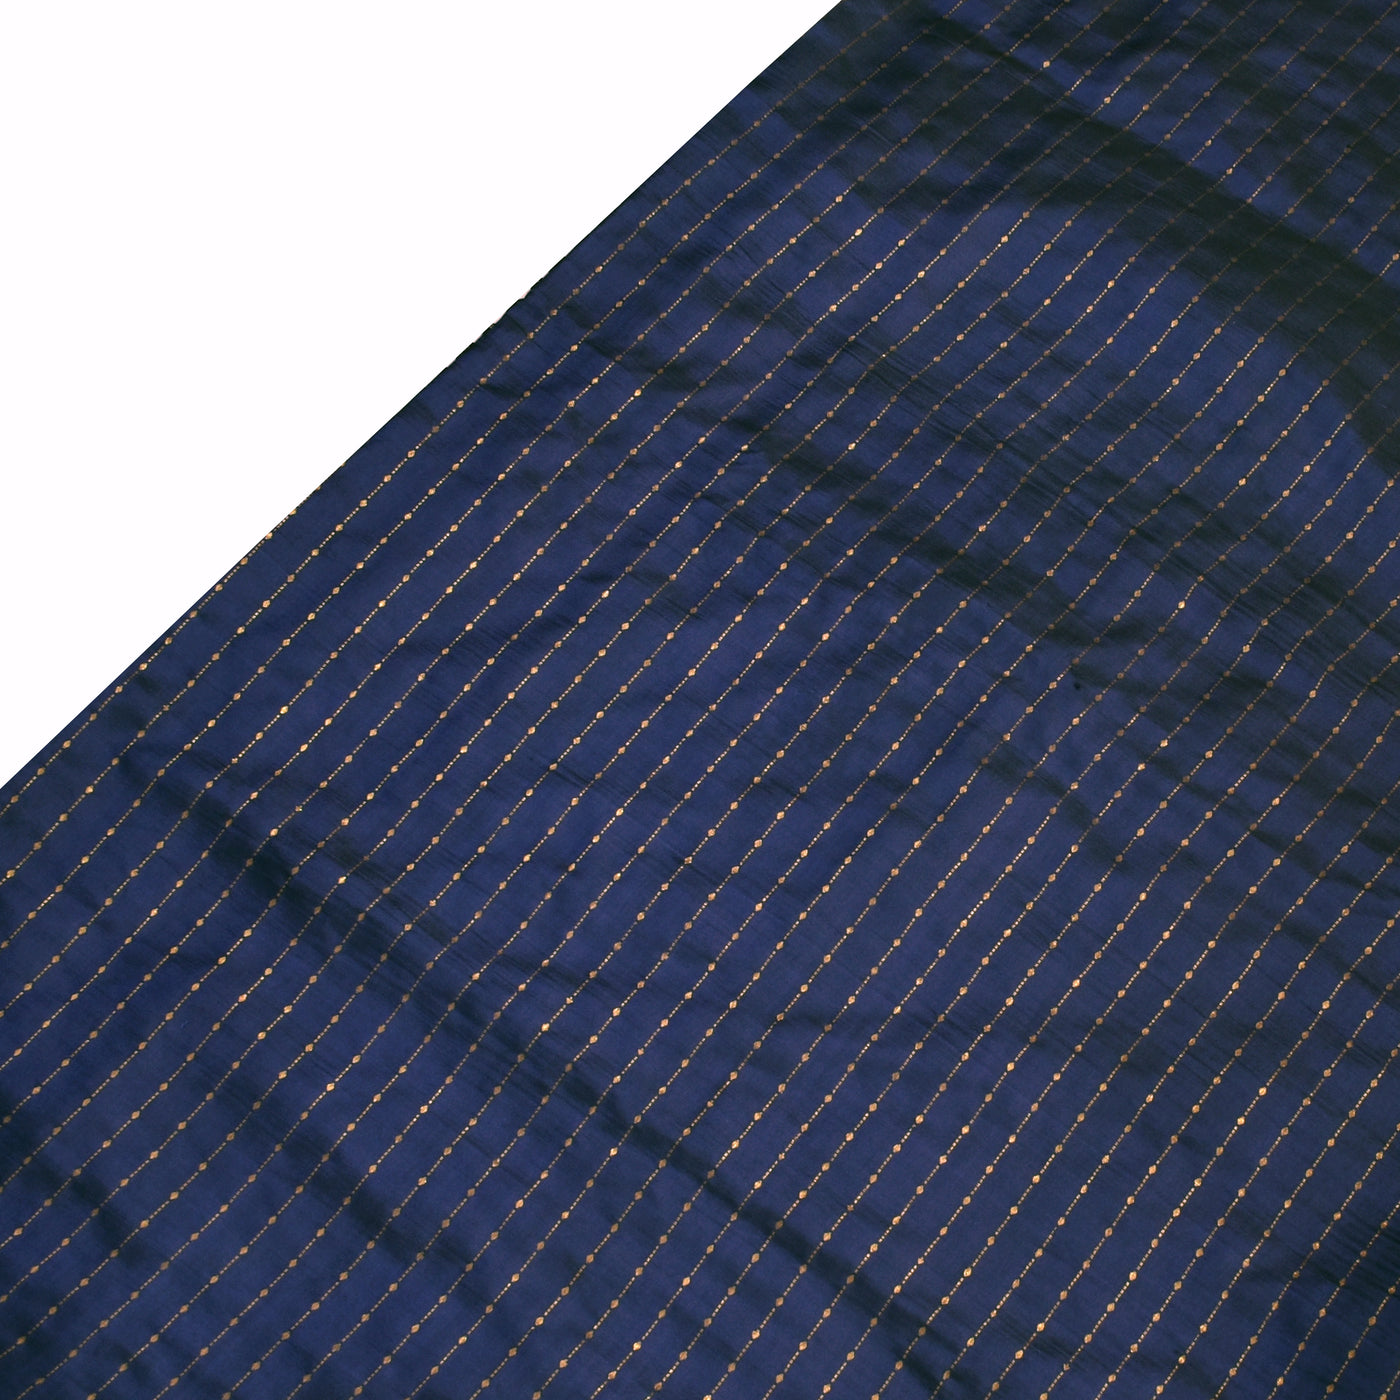 Navy Blue Pen Kalamkari Silk Saree with Dots and Stripes Design